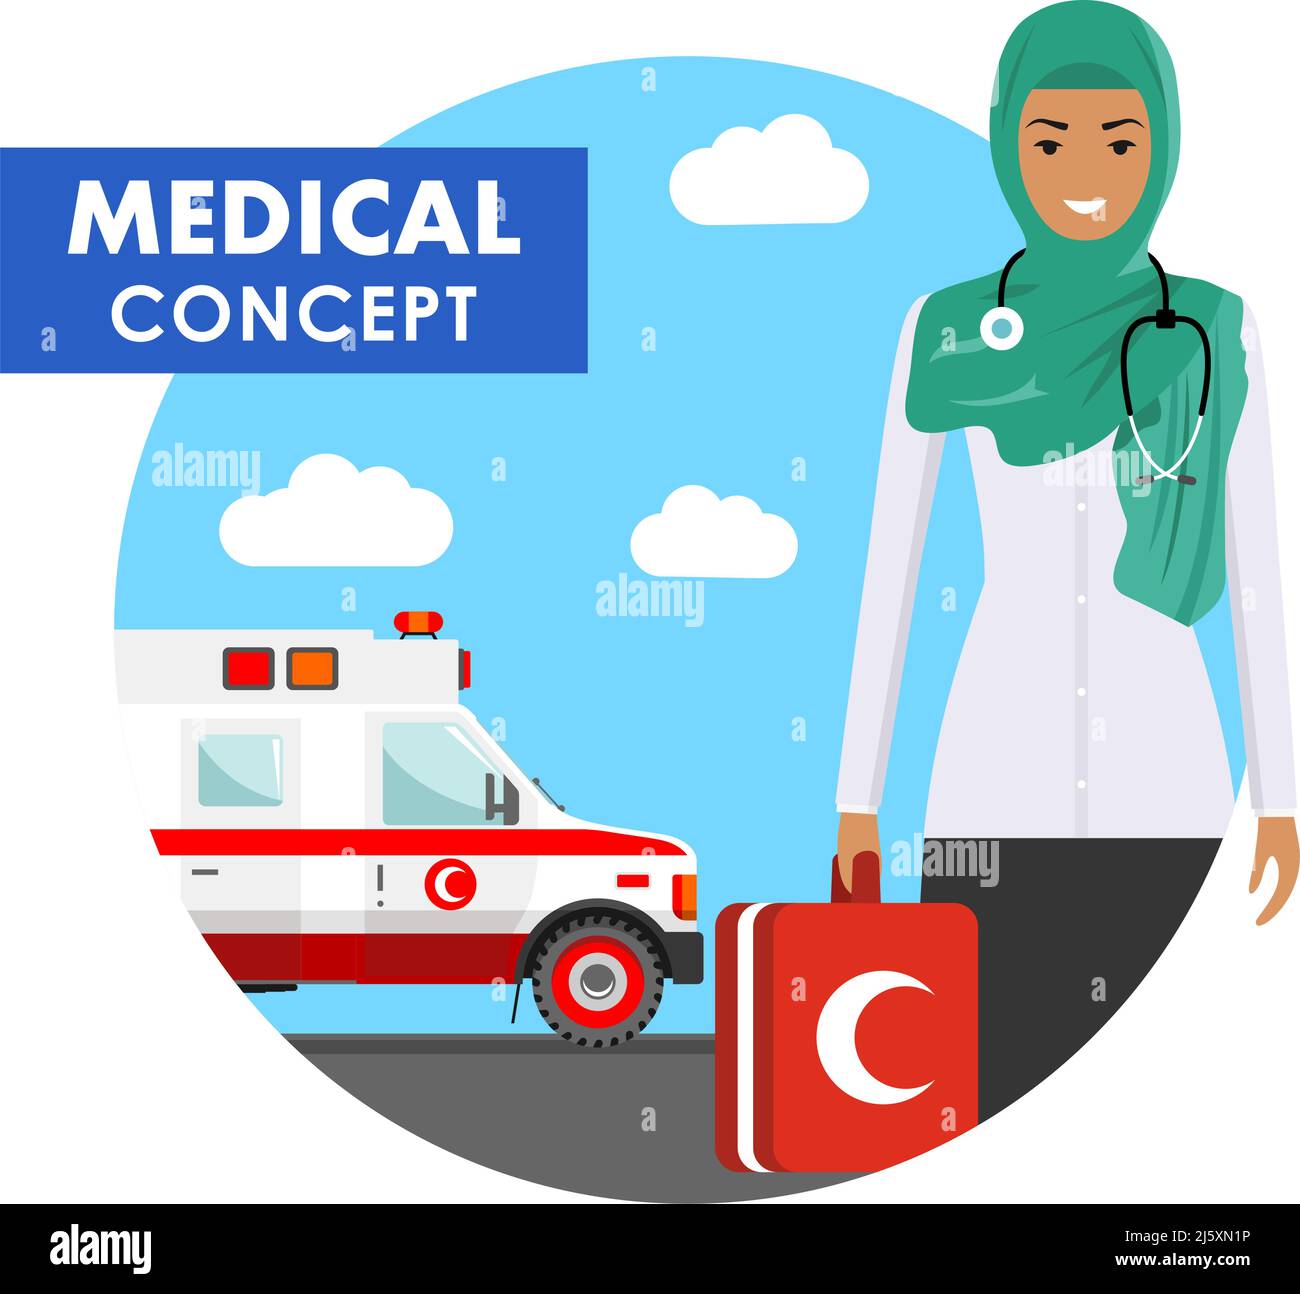 Concept médical. Illustration détaillée des médecins musulmans arabes en uniforme sur fond avec une ambulance médicale de style plat. Vecteur illus Illustration de Vecteur